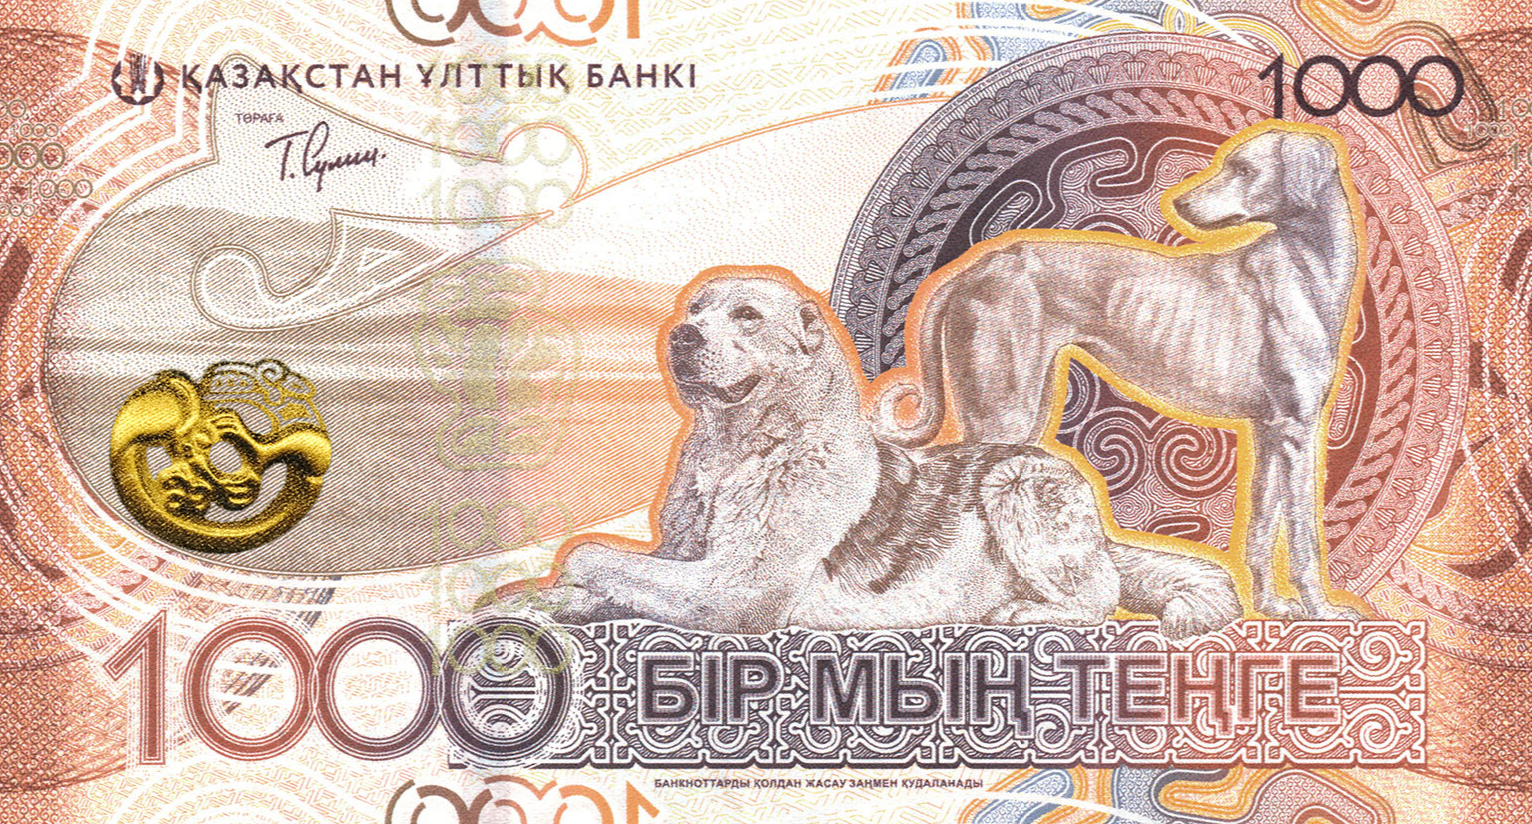 Нацбанк Казахстана презентовал новую серию банкнот национальной валюты (ФОТО)